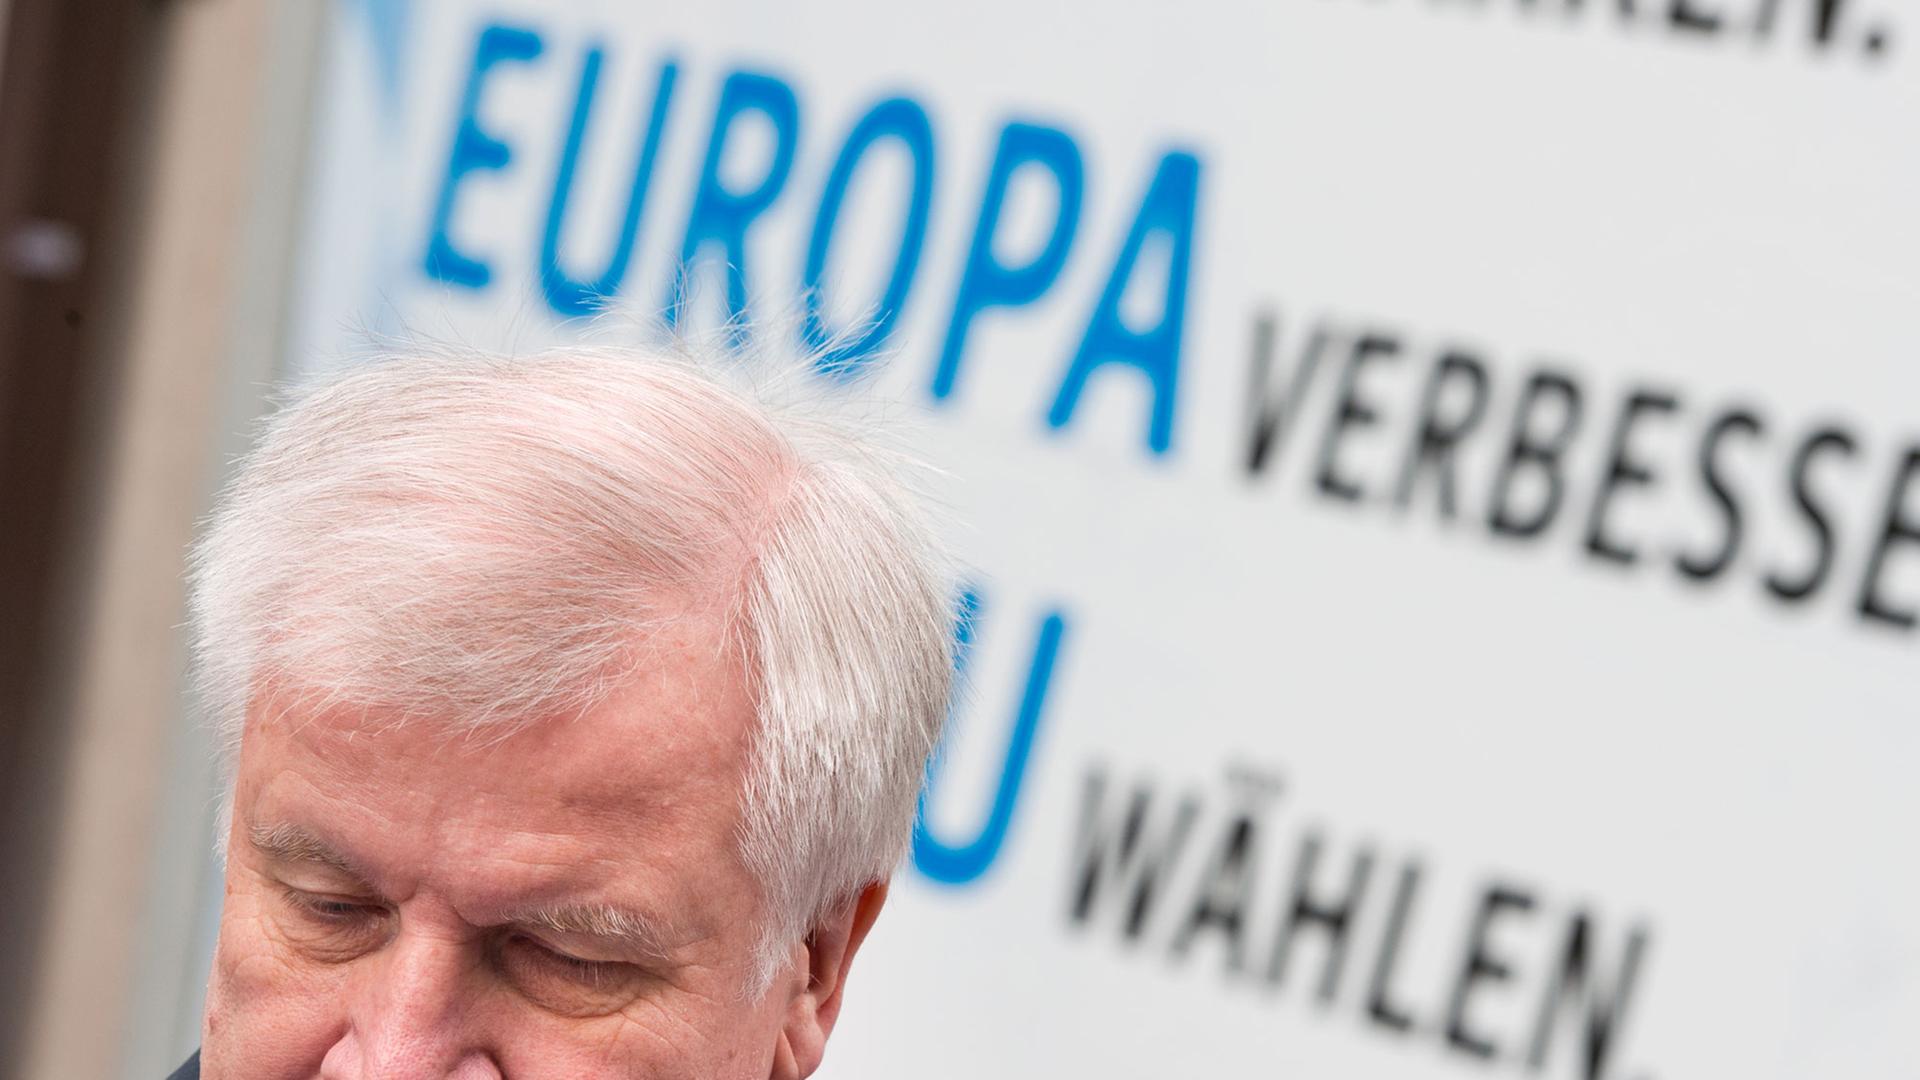 Der Parteivorsitzende der Christlich Sozialen Union (CSU), Horst Seehofer, steht am 26.05.2014 in München (Bayern), vor Beginn der CSU-Vorstandssitzung, unter einem Wahlplakat seiner Partei zu Europawahl. Foto: Peter Kneffel/dpa